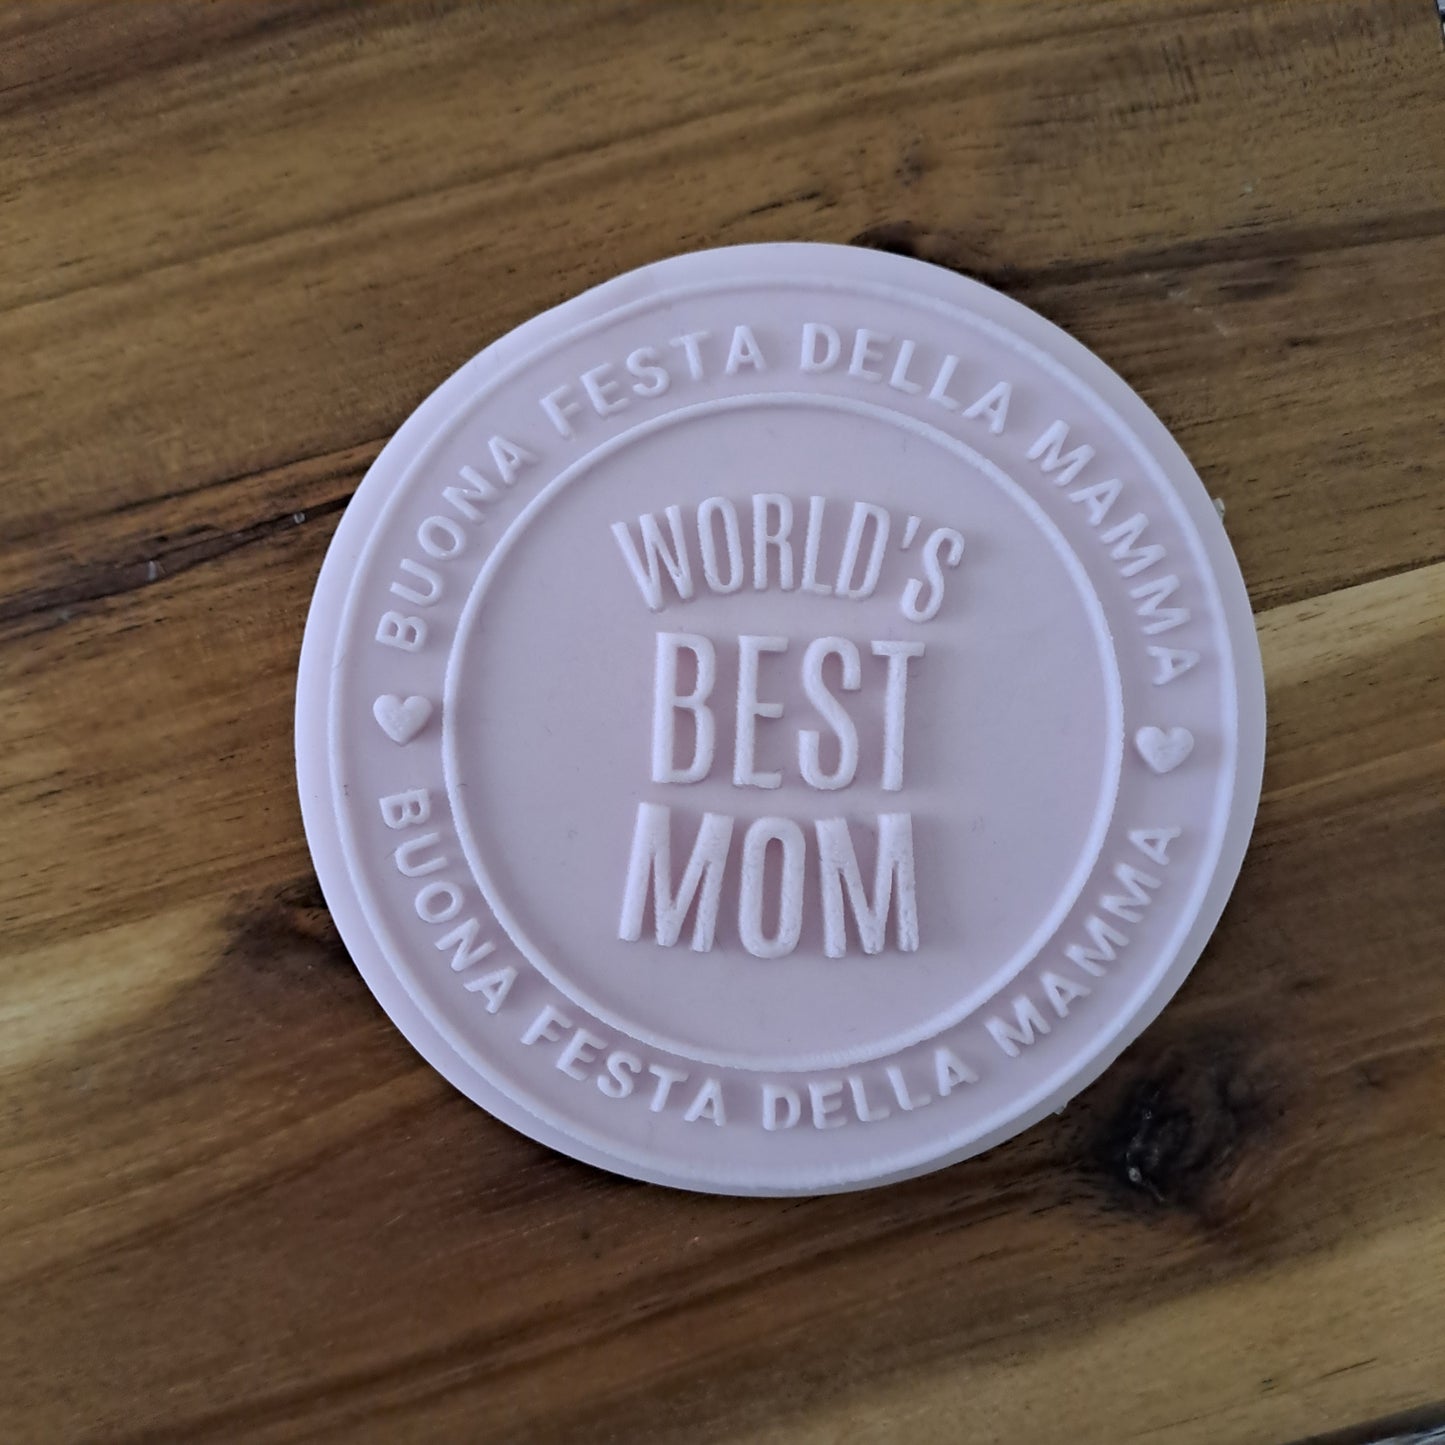 Stampo in acrilico -  Buona Festa della Mamma "Wold's Best Mom" - Cookies Cutter - Formina per biscotti o decorazioni torte